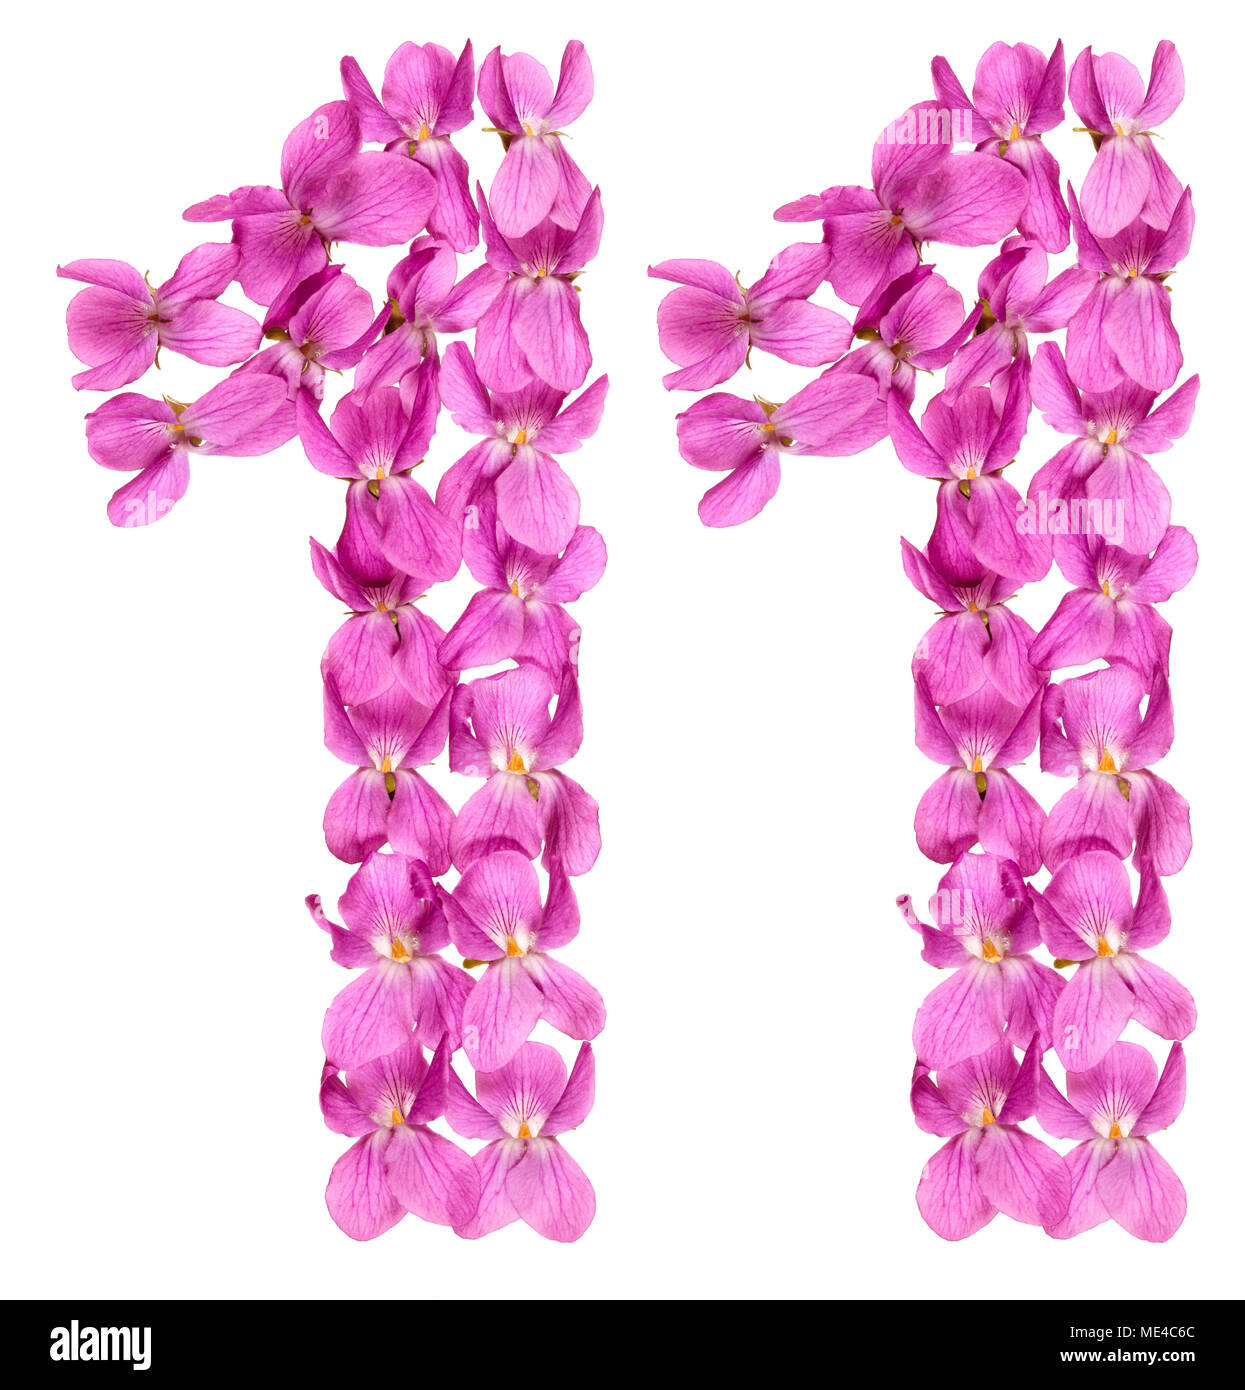 Numero arabo 11, undici, dai fiori di viola, isolato su sfondo bianco Foto Stock